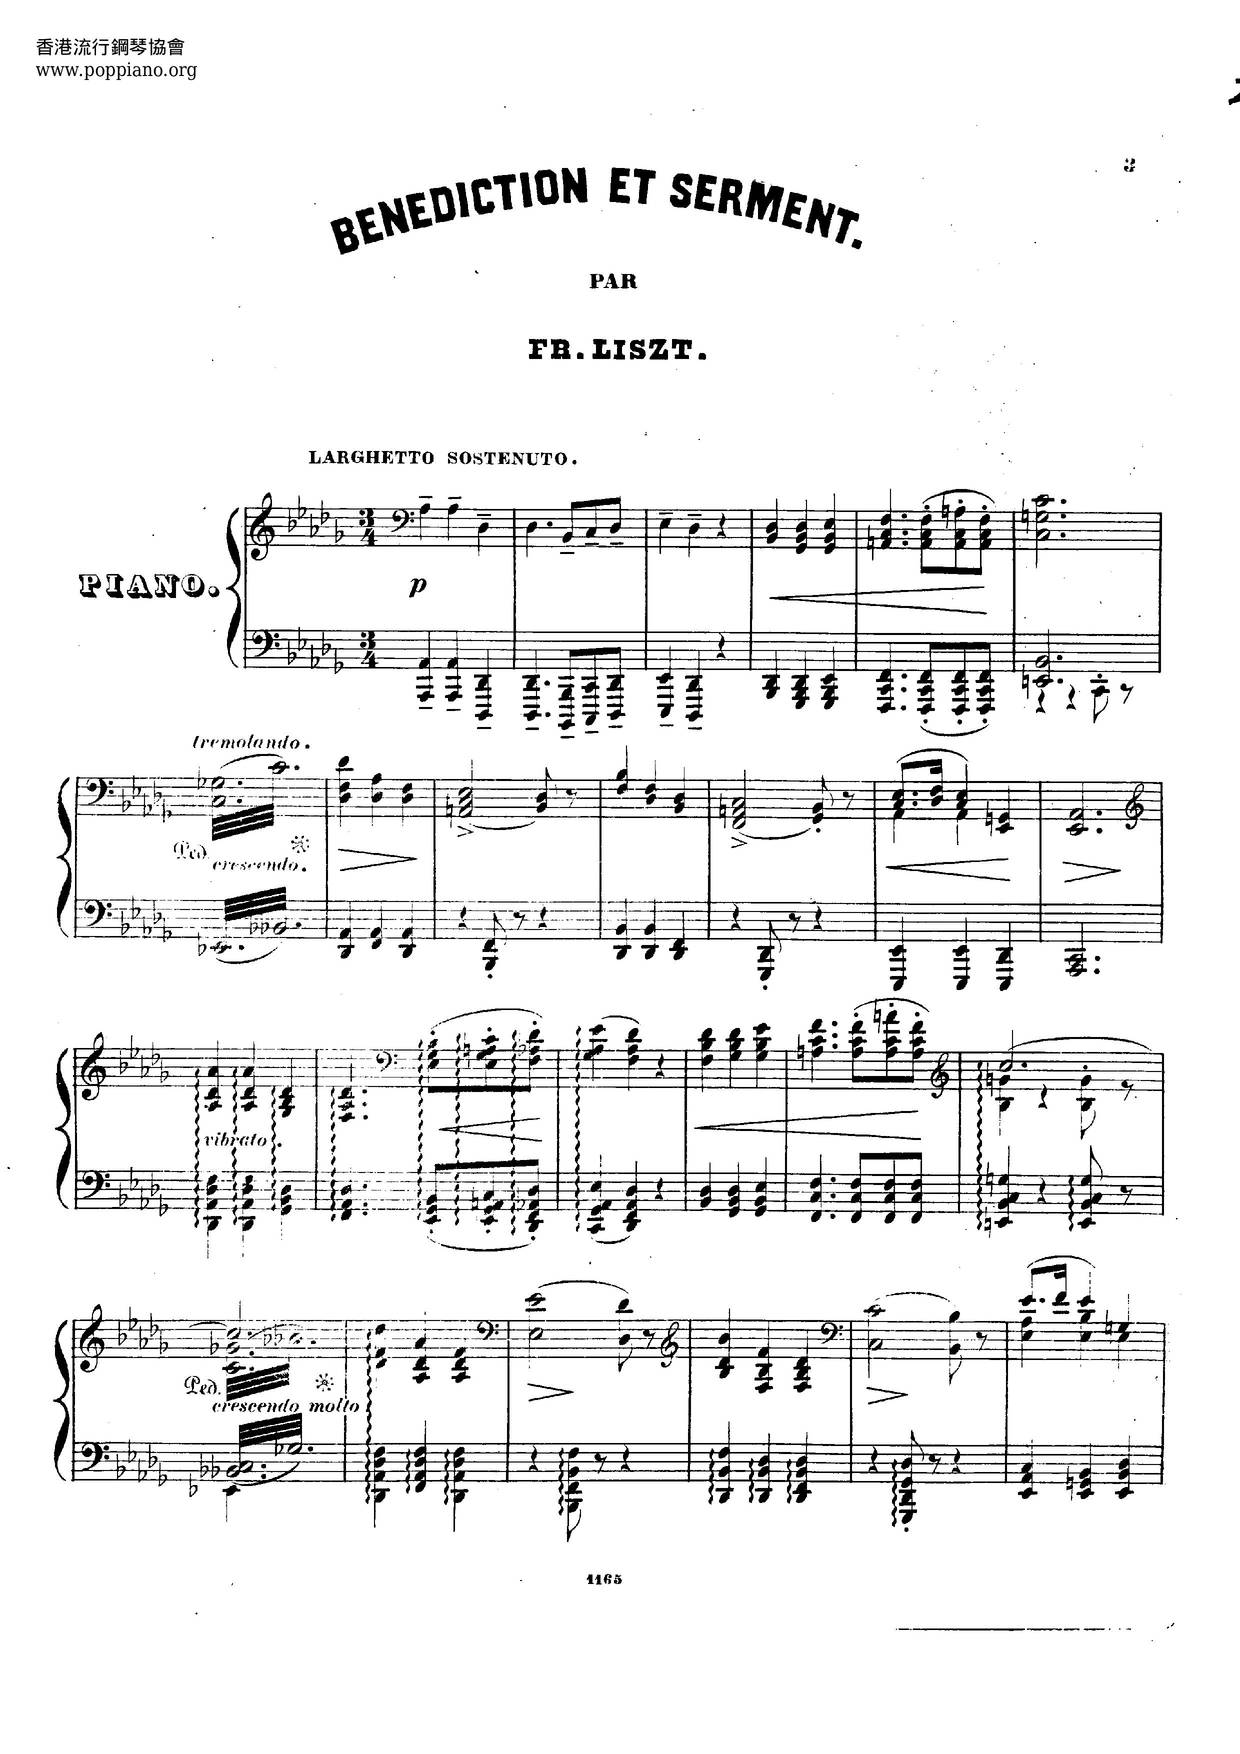 Bénédiction Et Serment, Deux Motifs De Benvenuto Cellini De Hector Berlioz, S.396 Score